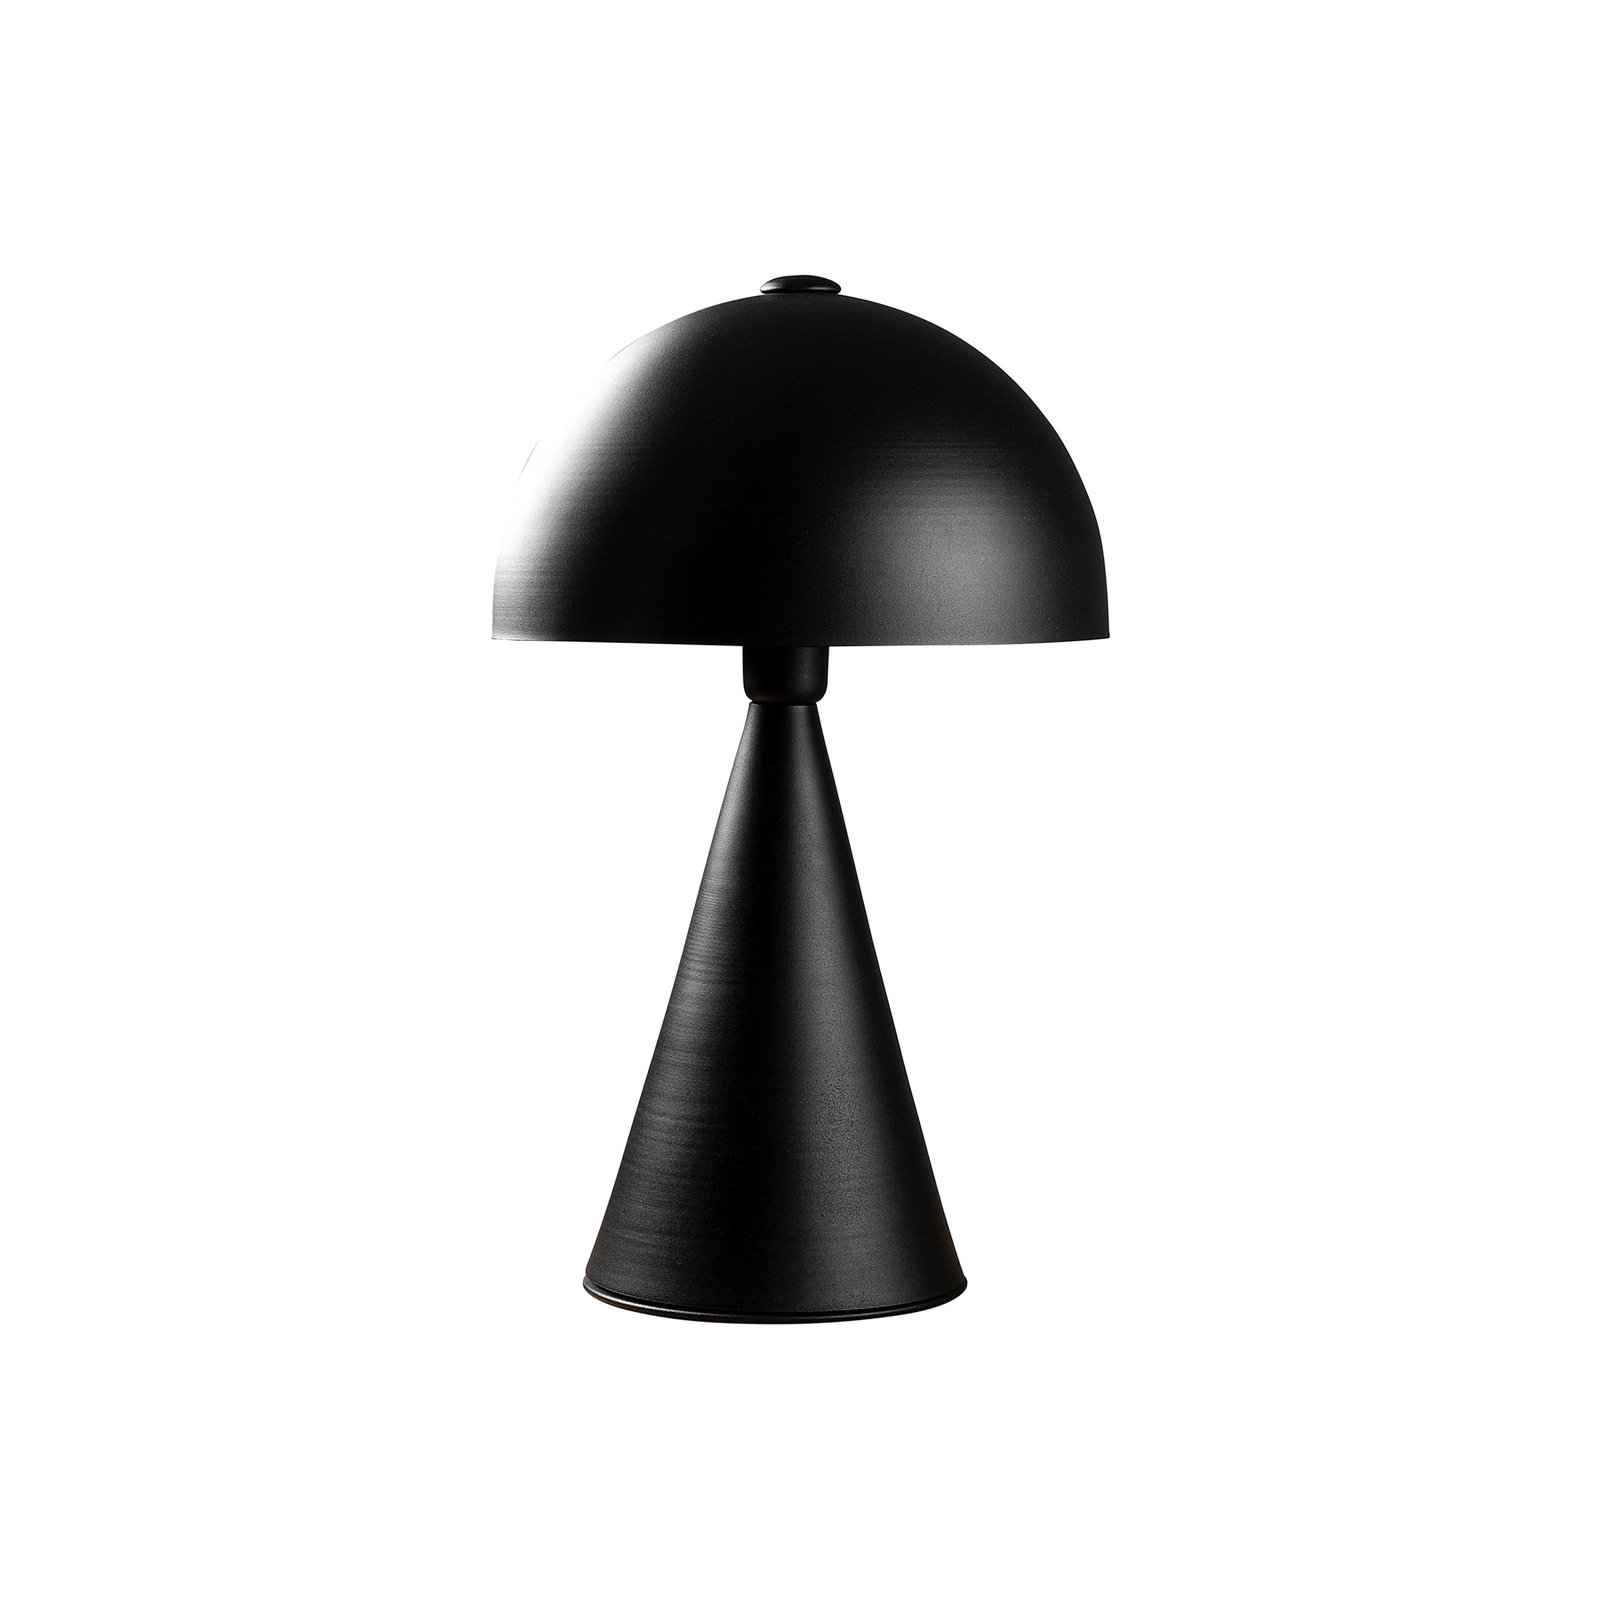 Namizna svetilka Dodo 5051, višina 52 cm, črna